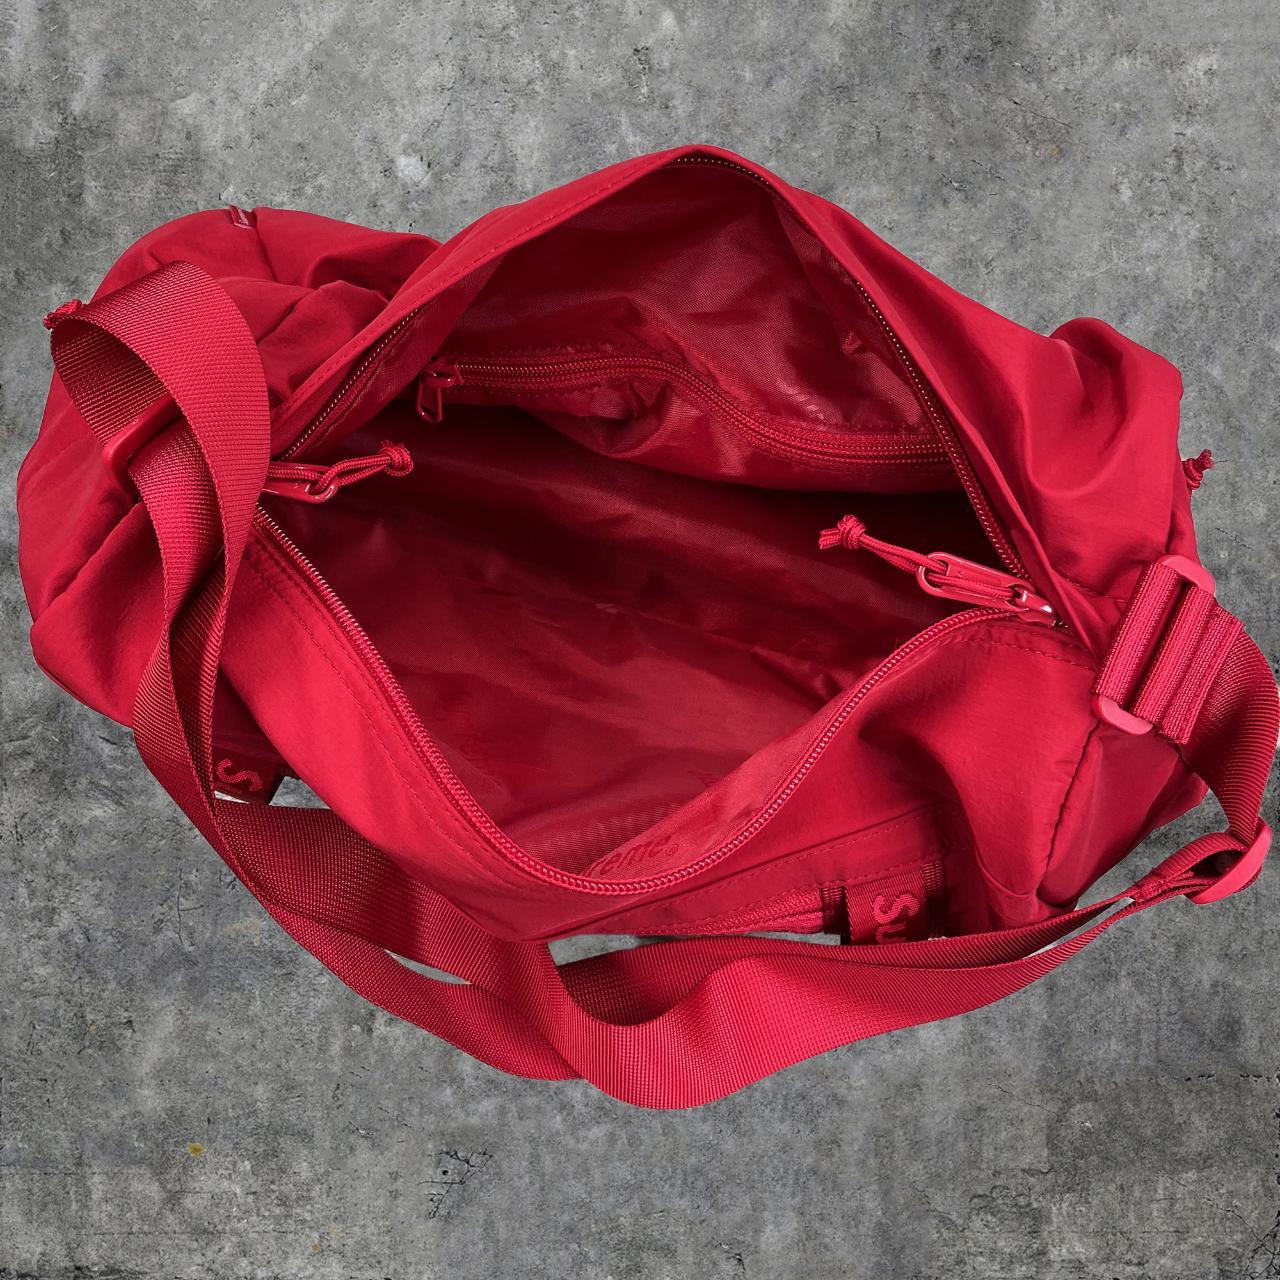 Supreme Mini Duffle Bag “Dark Red” – Kickz Inc